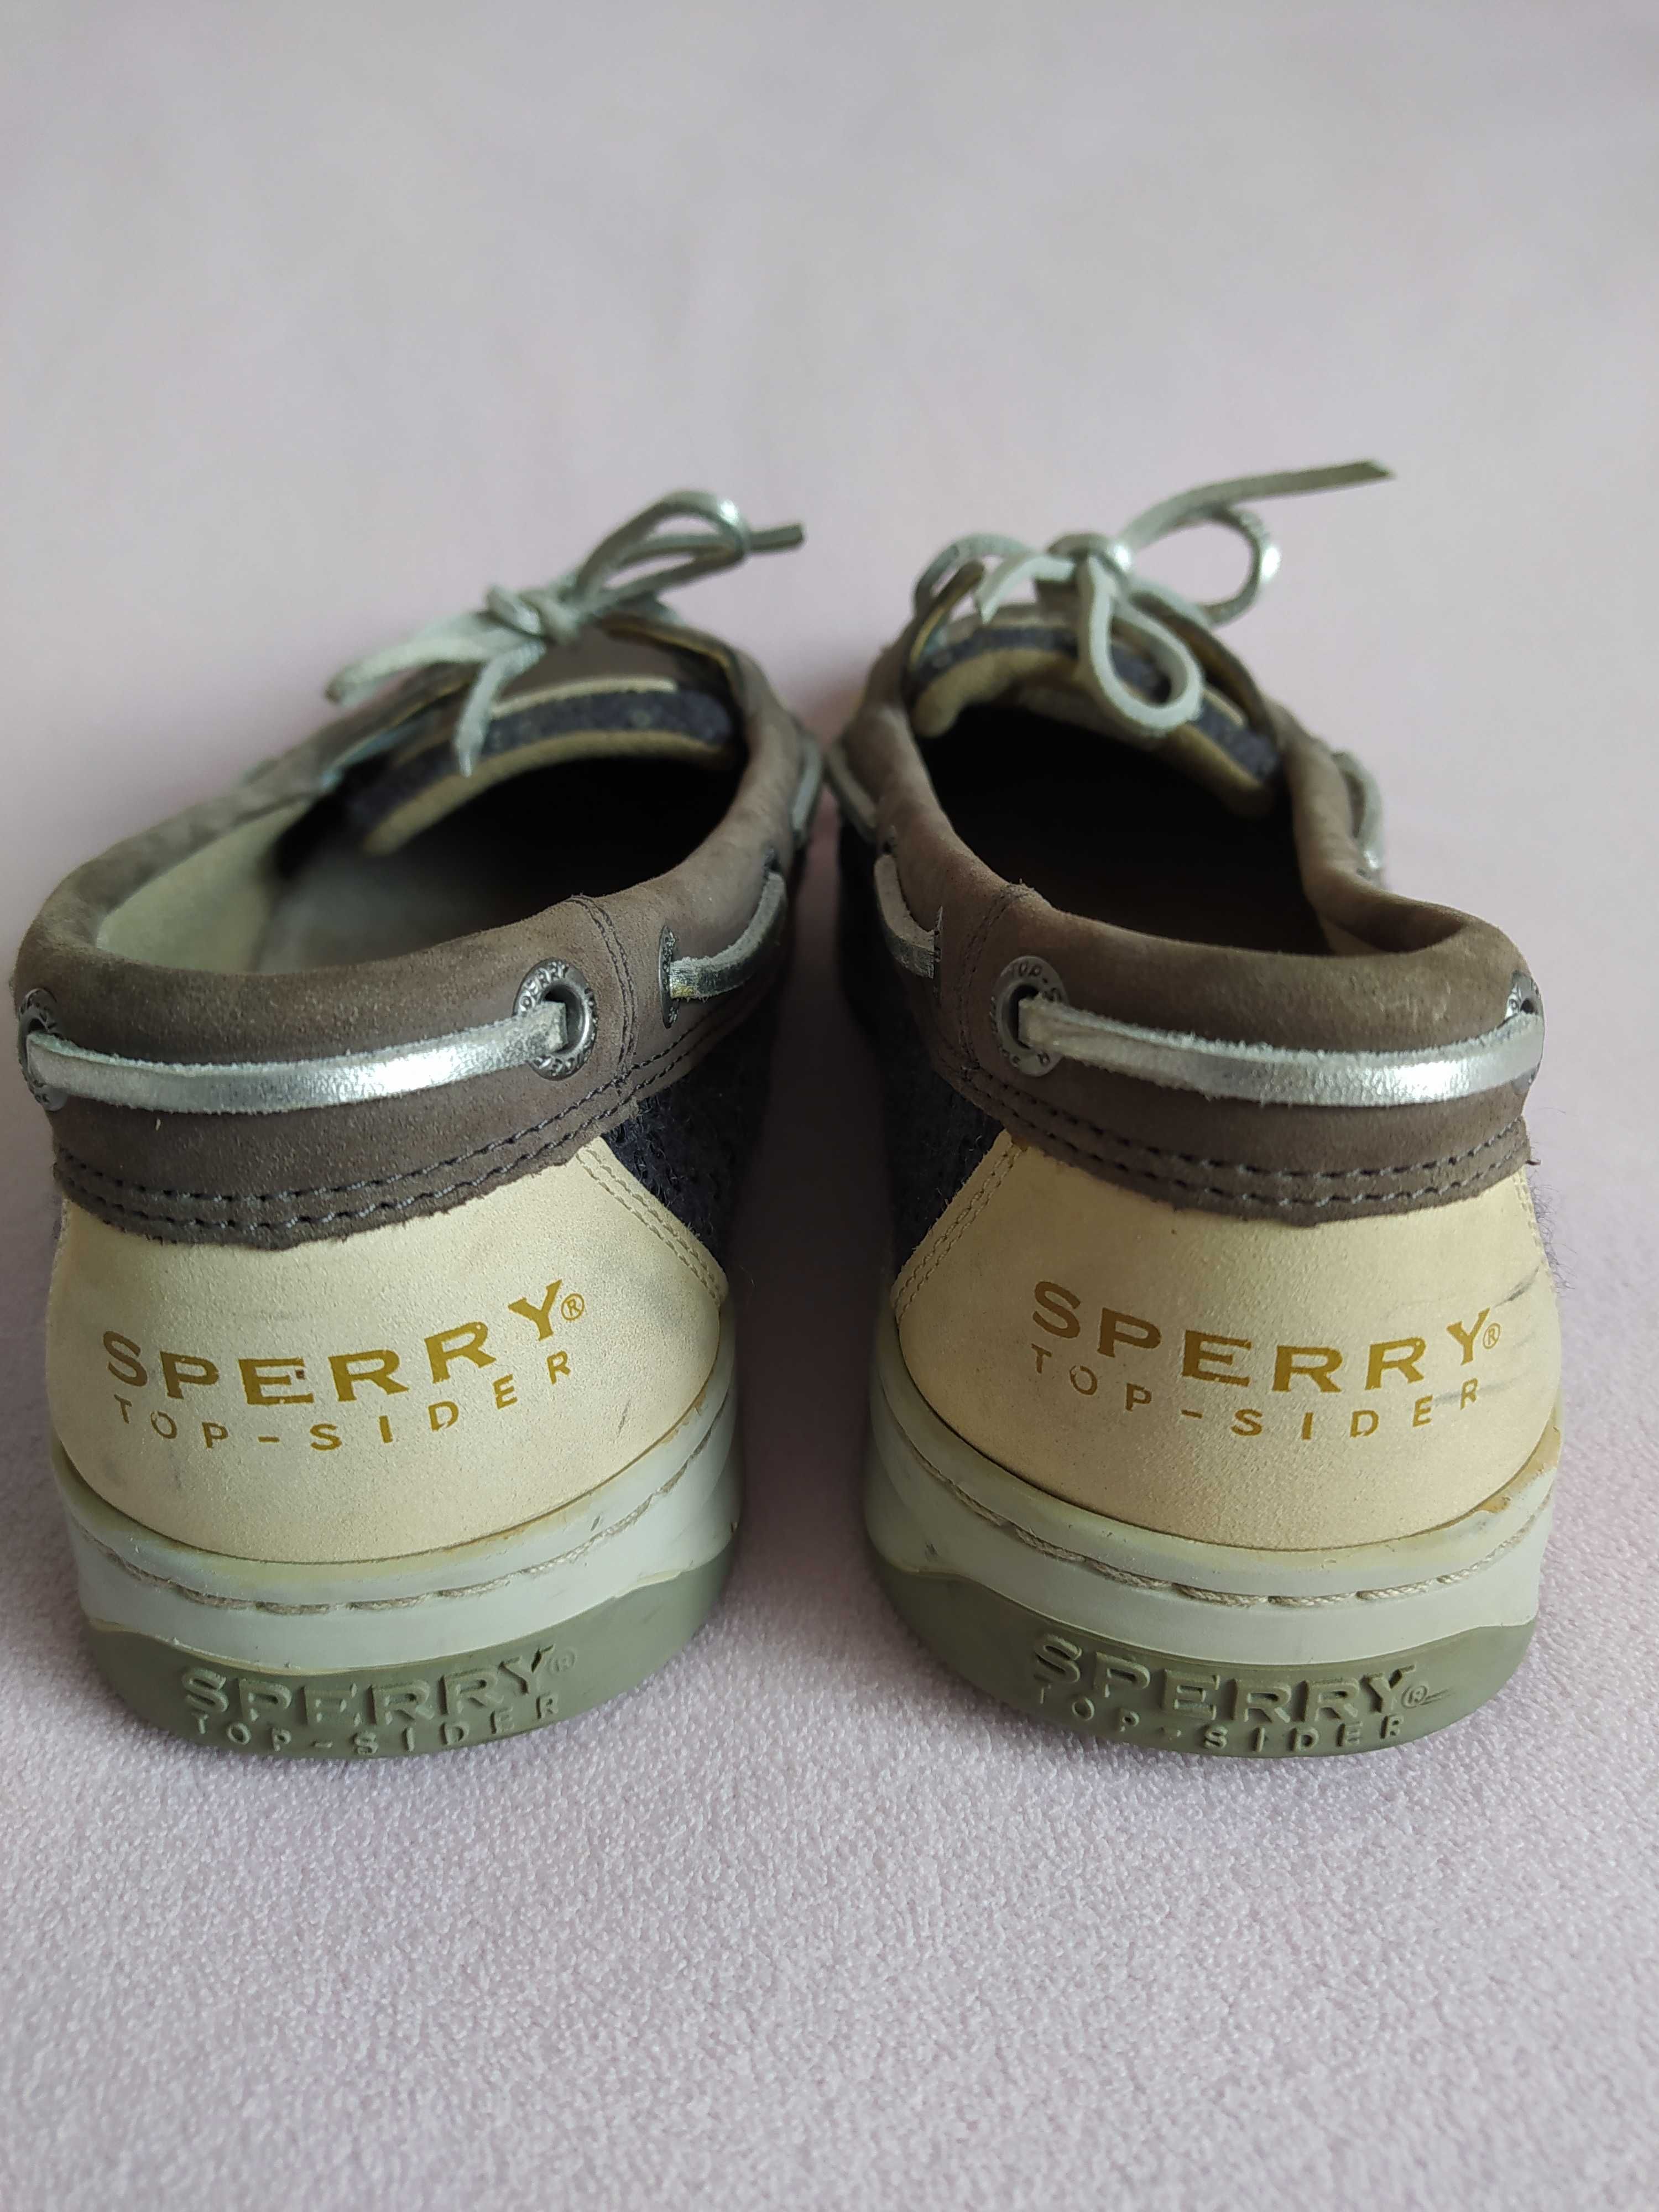 Buty mokasyny żeglarskie półbuty Sperry Top- Sider  r. 39 skóra